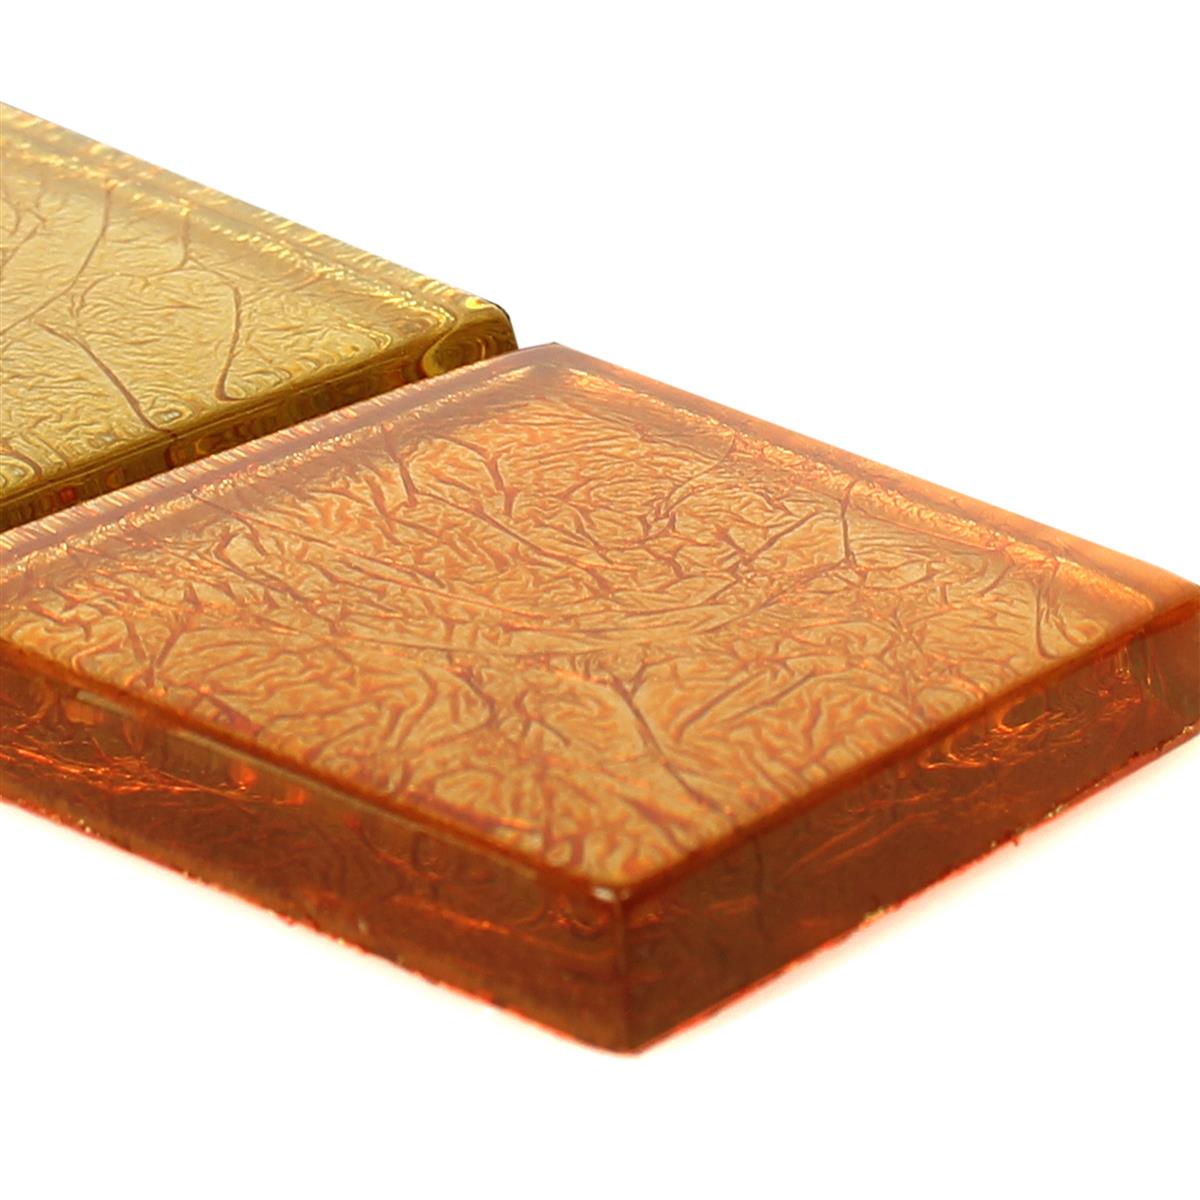 Mosaico Di Vetro Piastrelle Confine SantaFe Oro Arancione Q48